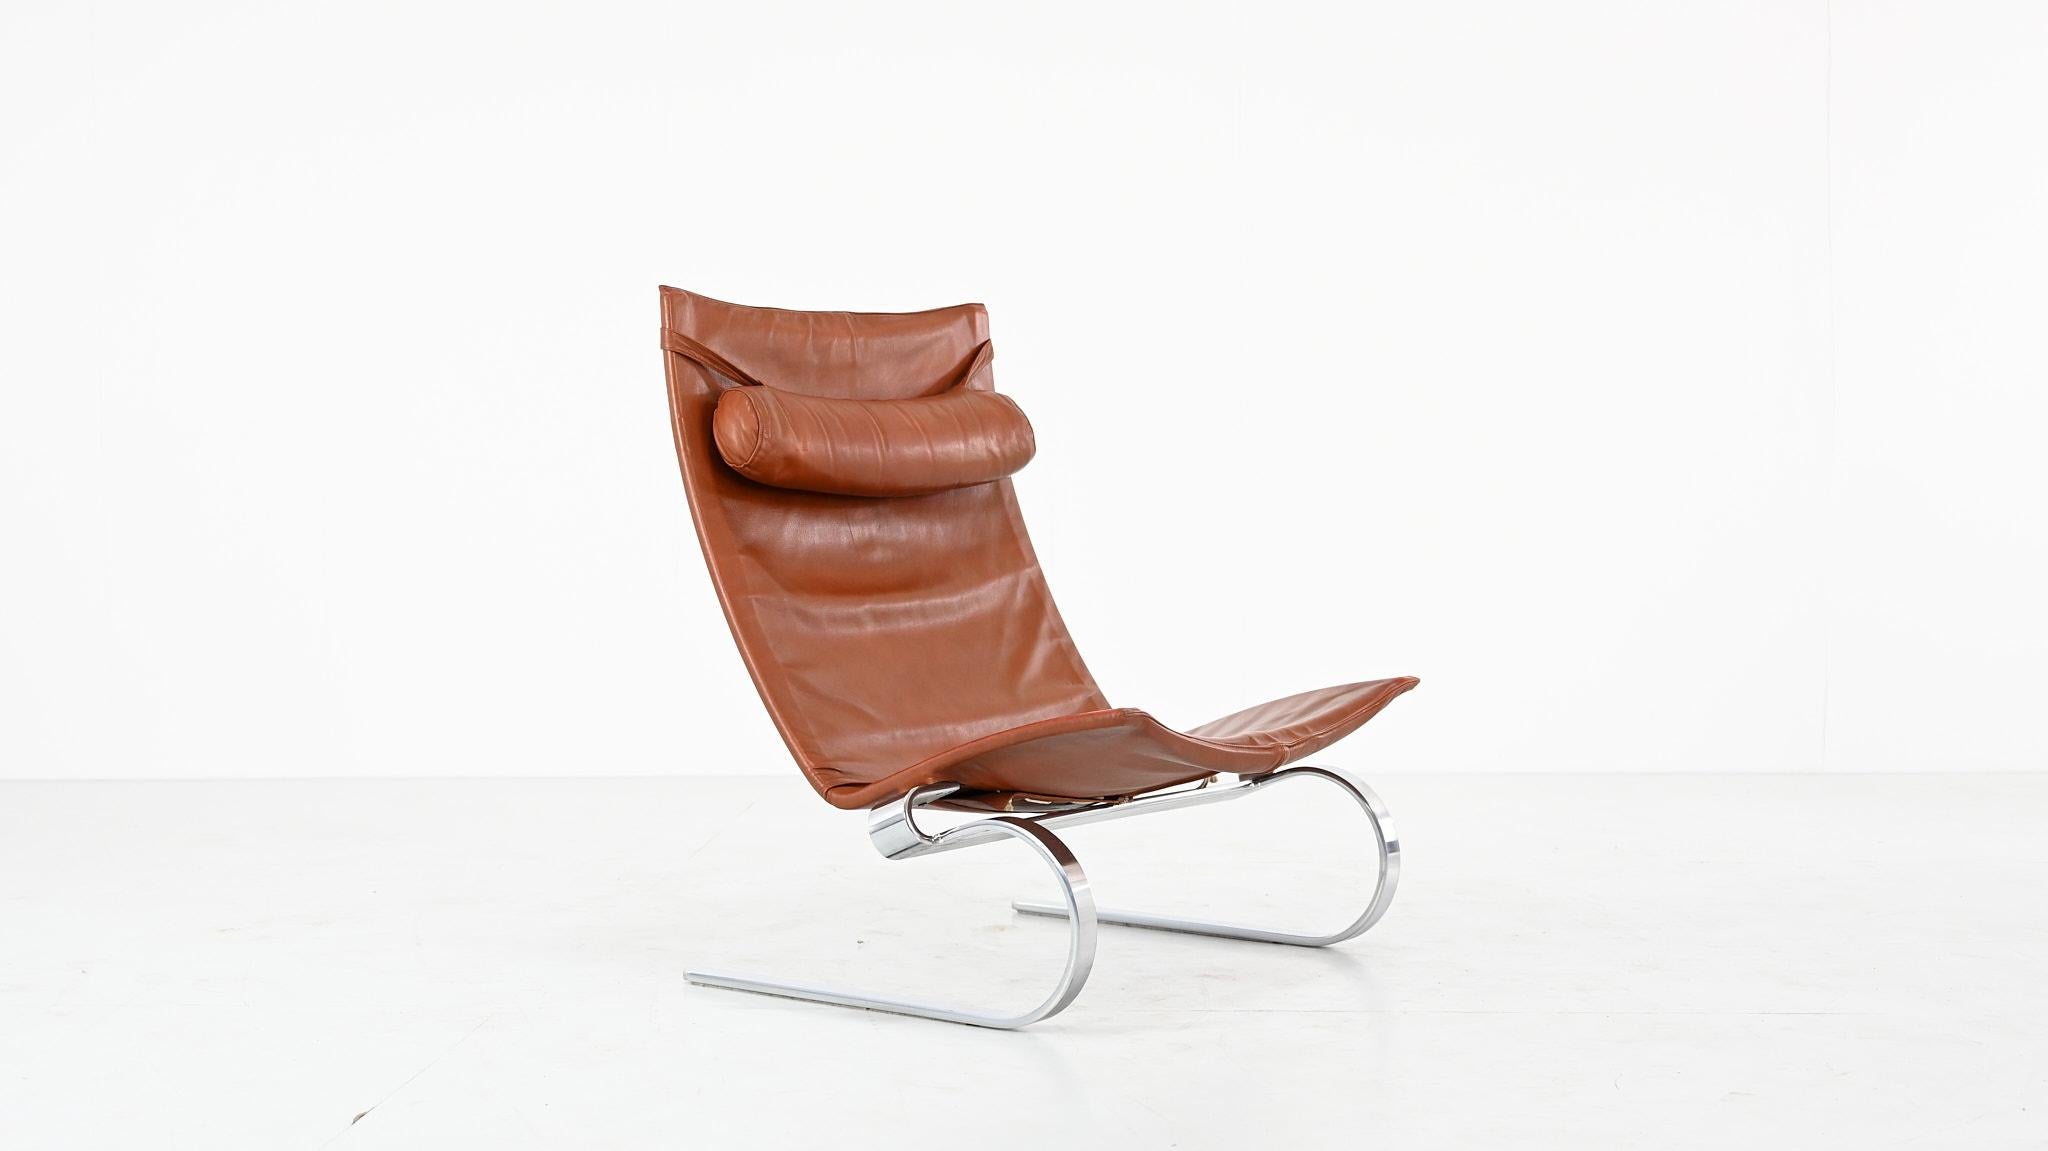 Première édition de la chaise longue PK20, un chef-d'œuvre de grâce et d'élégance créé en 1968 par le designer danois Poul Kjaerholm pour Ejvind Kold Christensen. 

Il se compose d'une structure esthétique en porte-à-faux en acier chromé mat et d'un